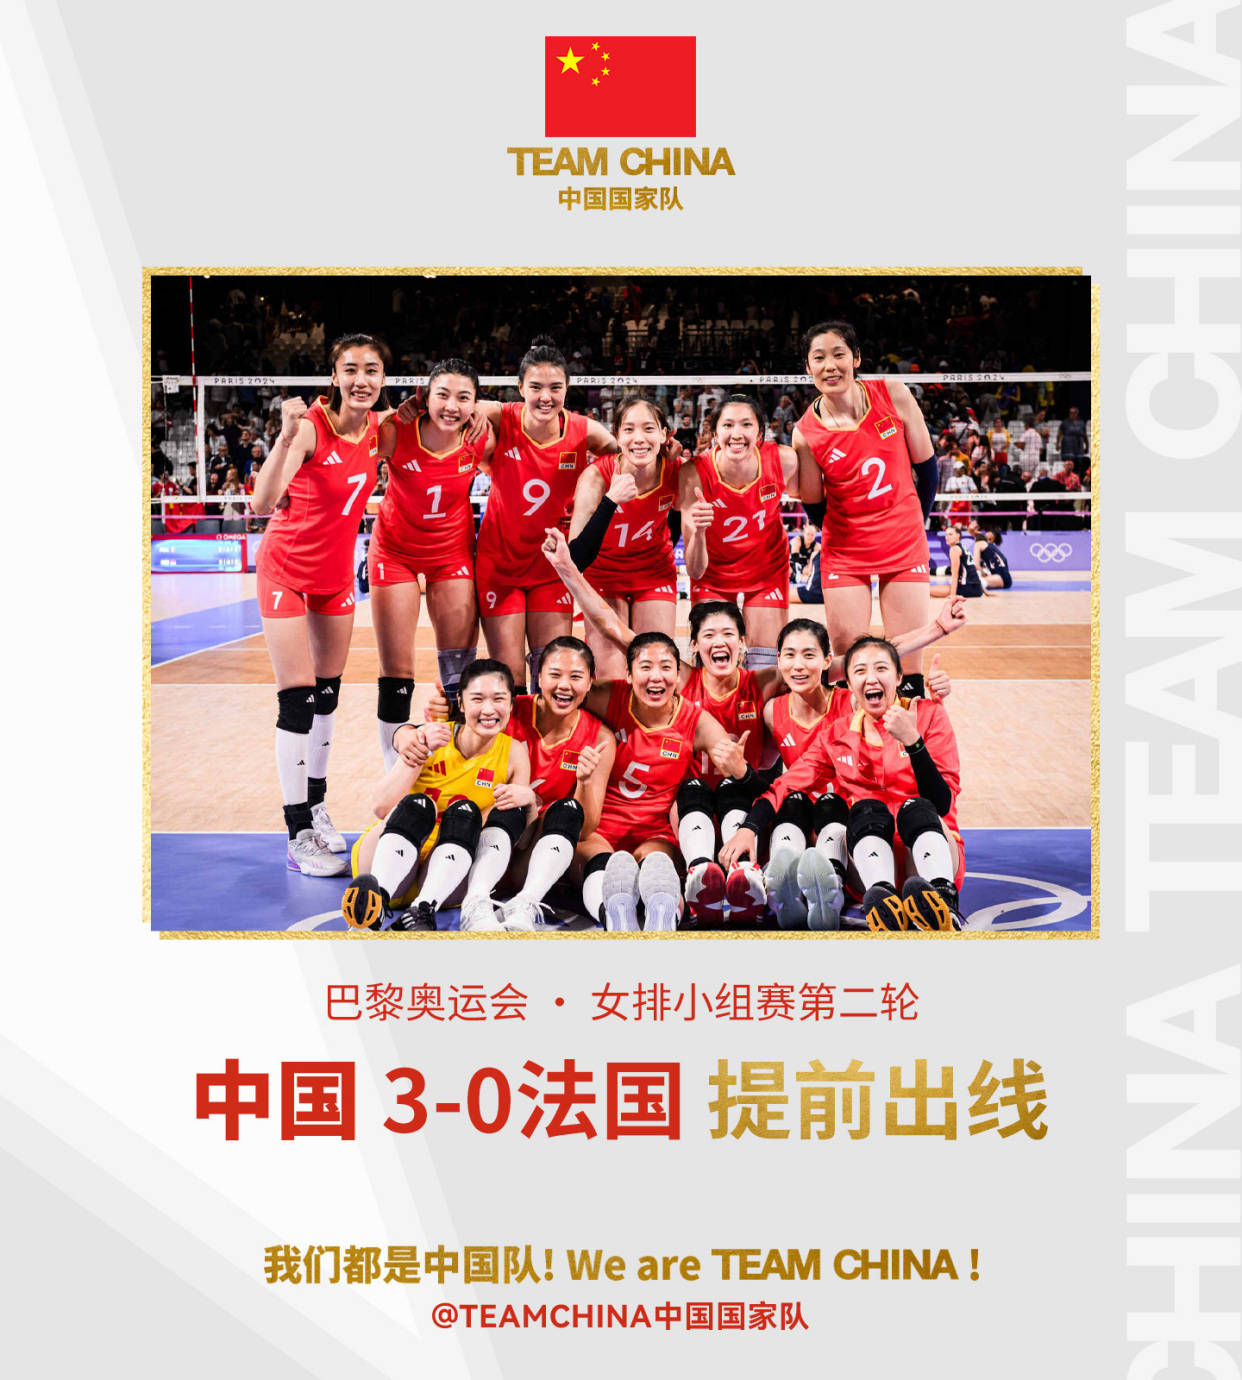 中国女排提前进入八强 末轮对阵塞尔维亚 还是要争胜抢小组第一